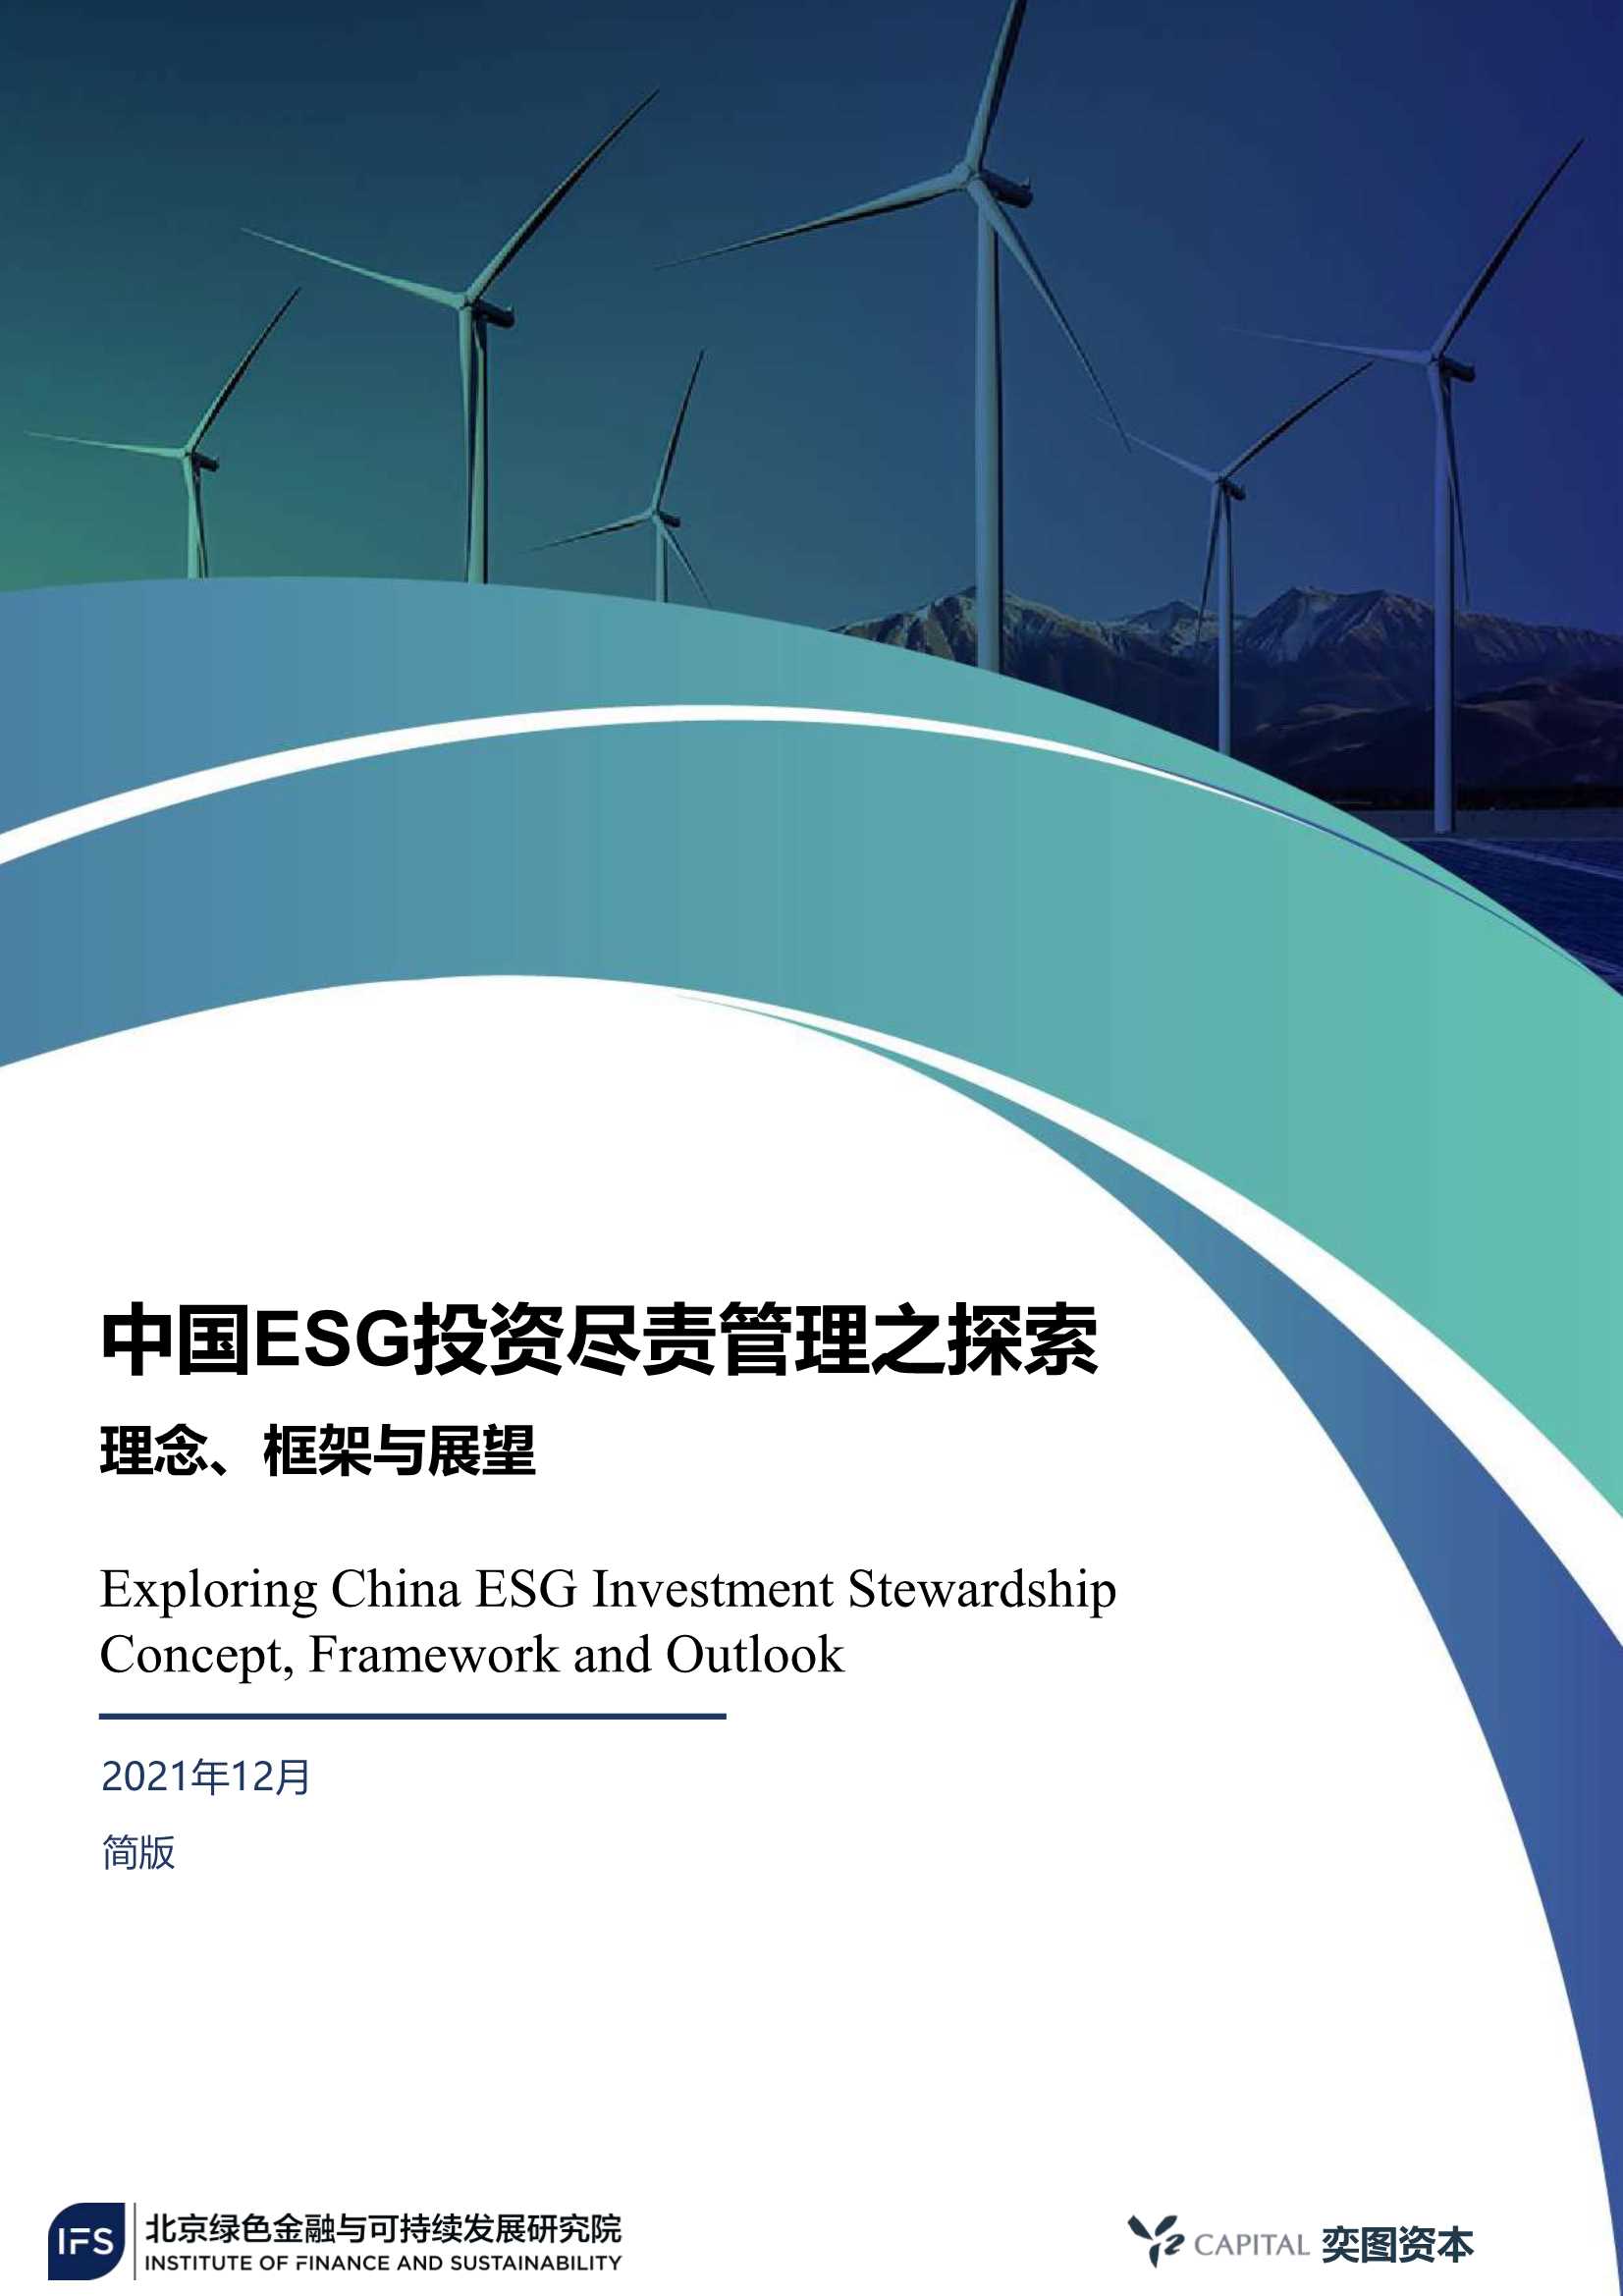 北京绿色金融与可持续发展研究所-中国ESG投资尽责管理之探索-2022.01-32页